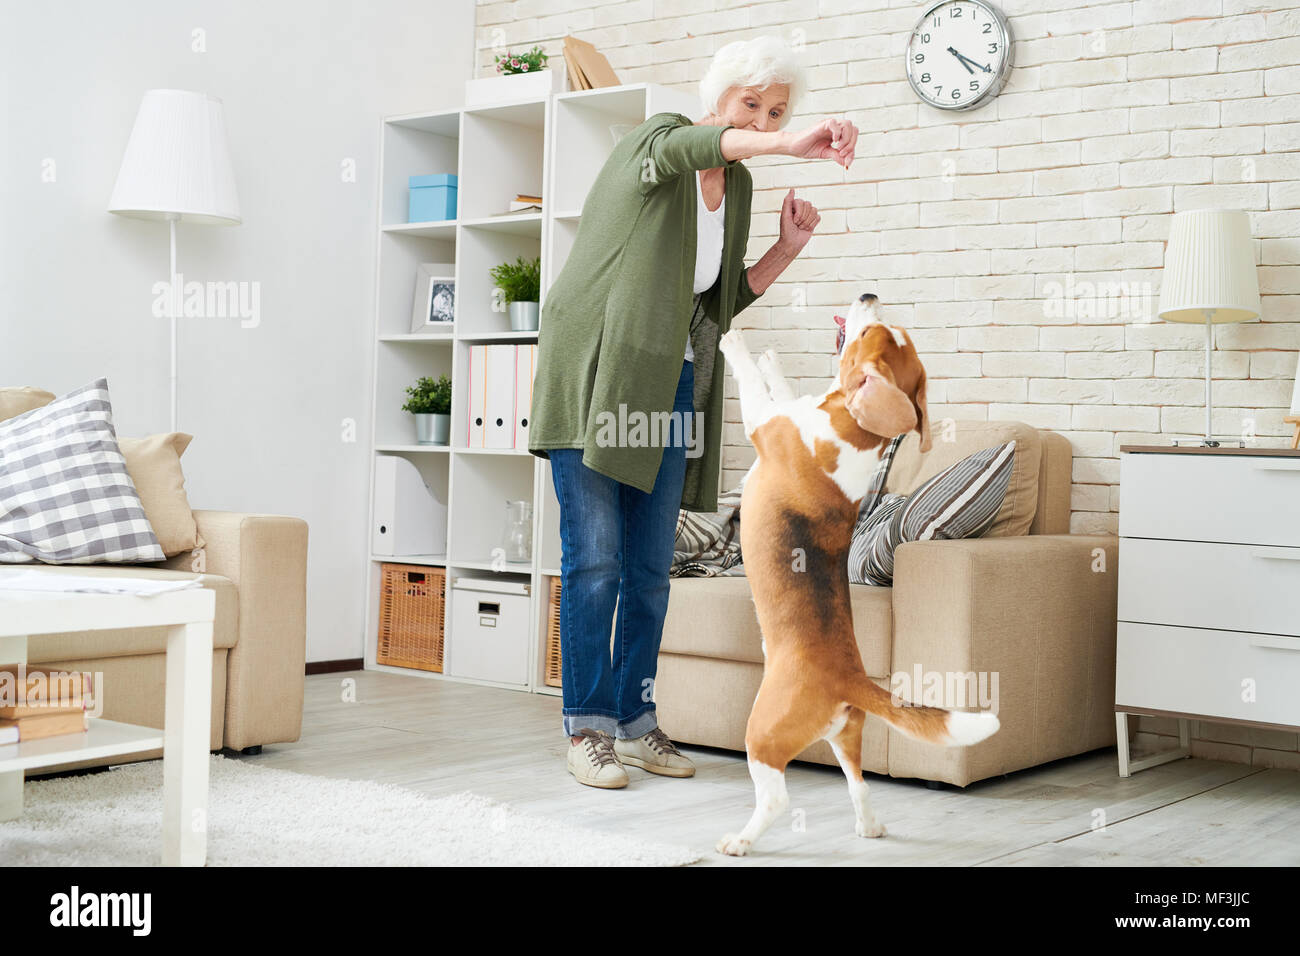 Cheerful woman moderne extatique des vêtements décontractés holding dogs traiter tout en assurant la formation de chien beagle à la maison, l'animal debout sur ses pattes de demande ad foo Banque D'Images